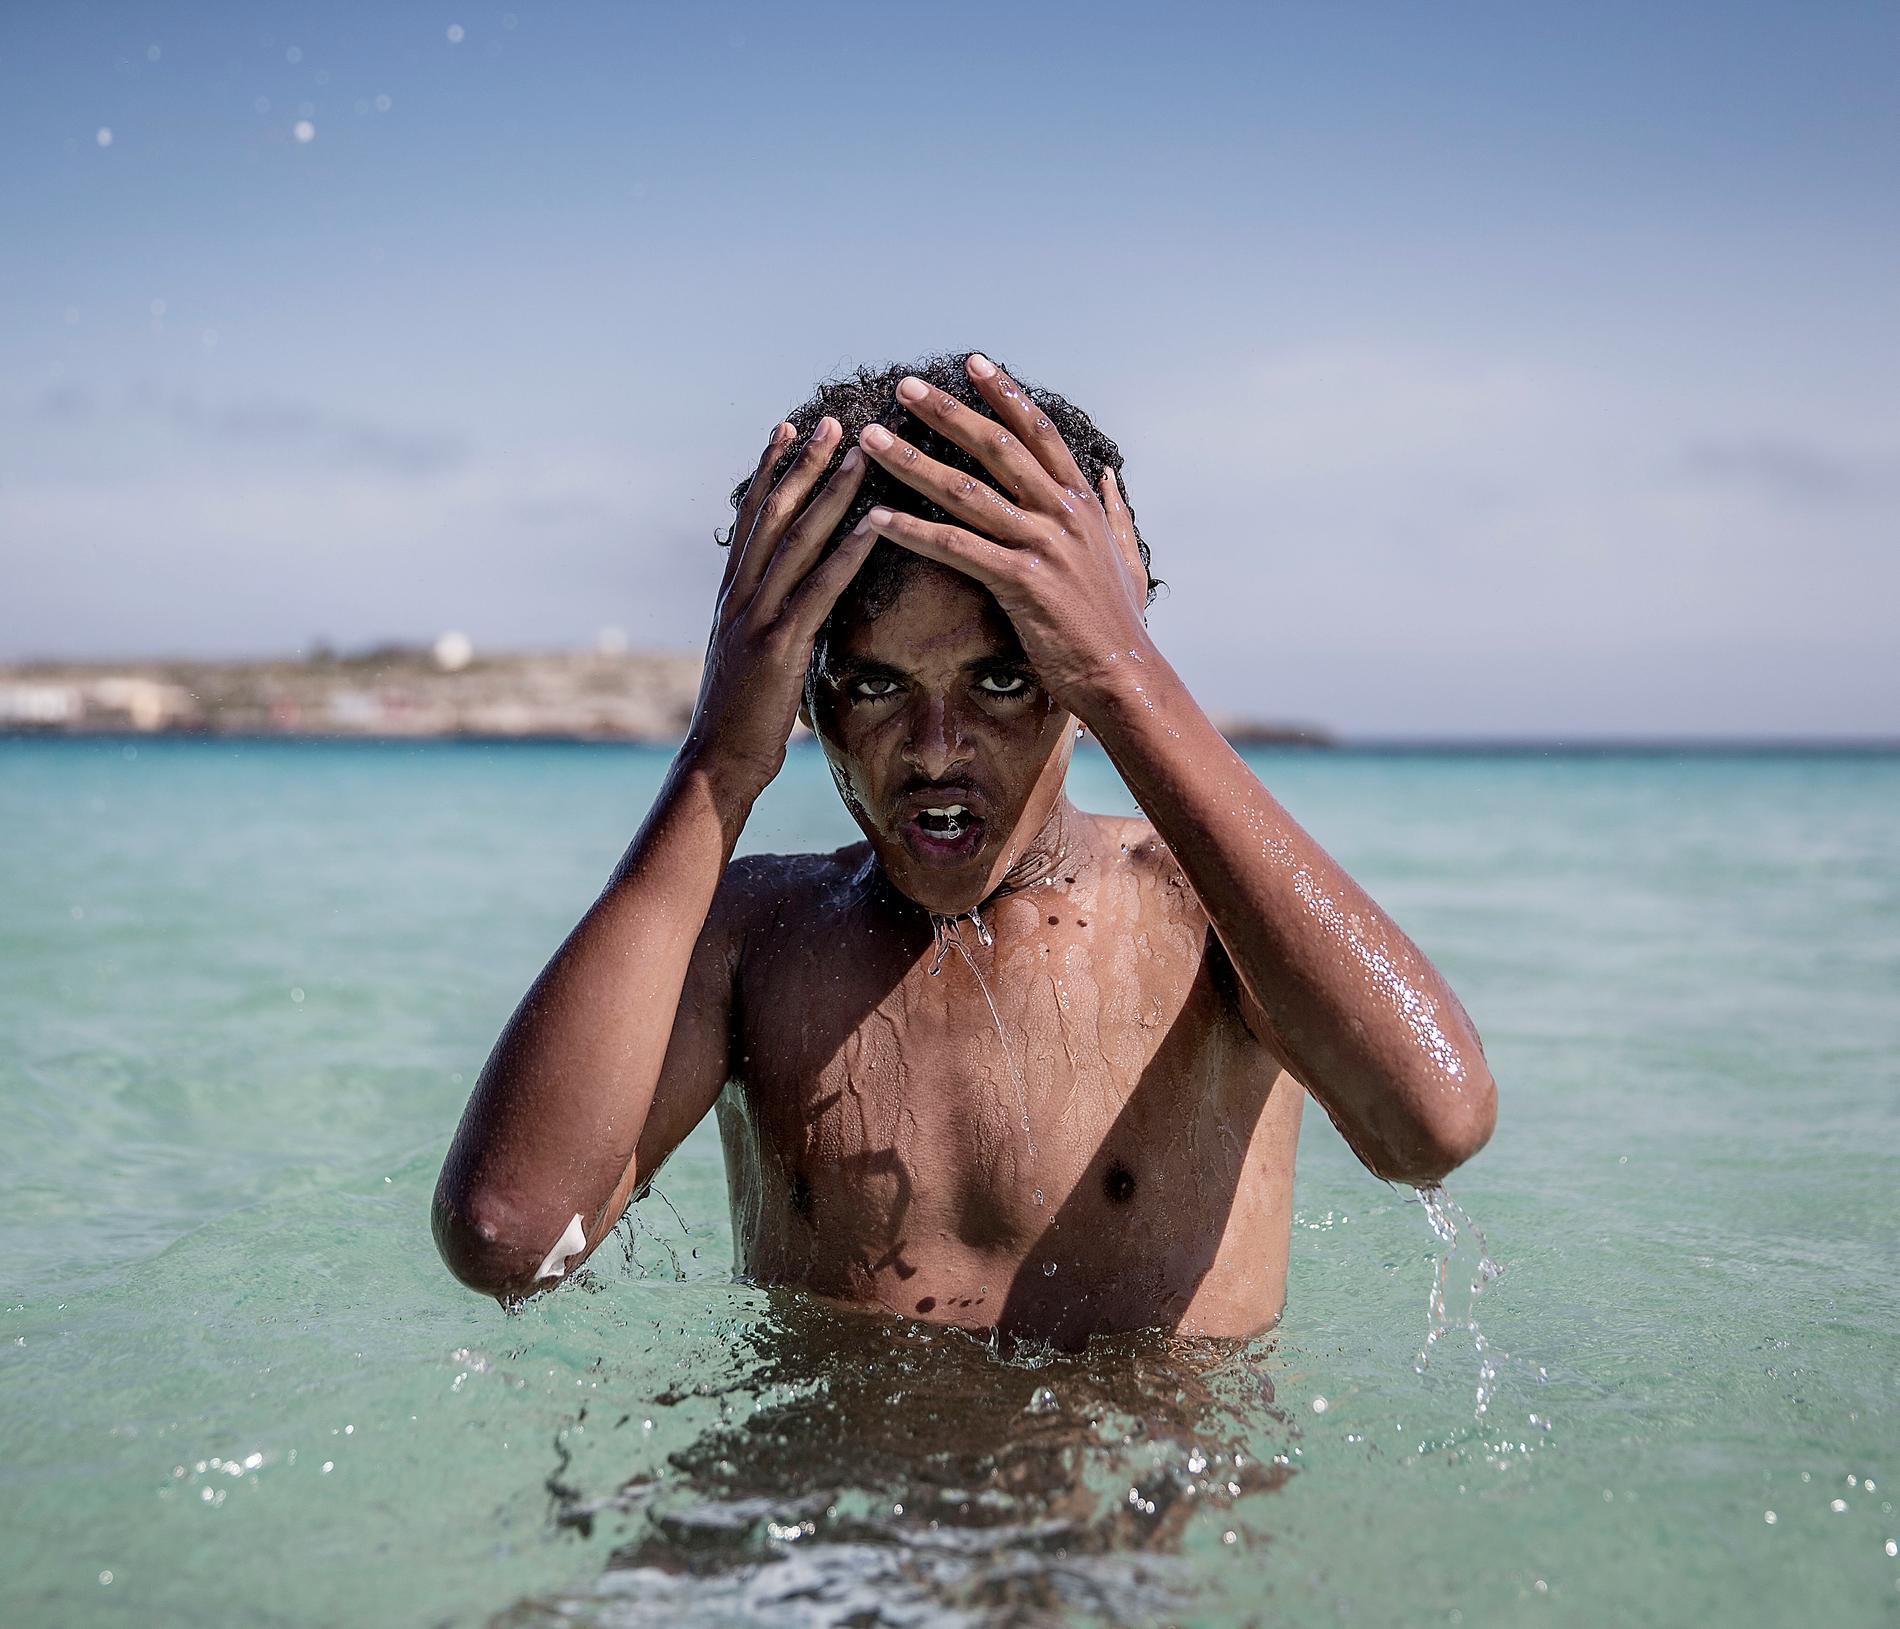 Båtflyktingar från Afrika hamnar ofta i Lampedusa, Italien. Foto: Magnus Wennman, Aftonbladet